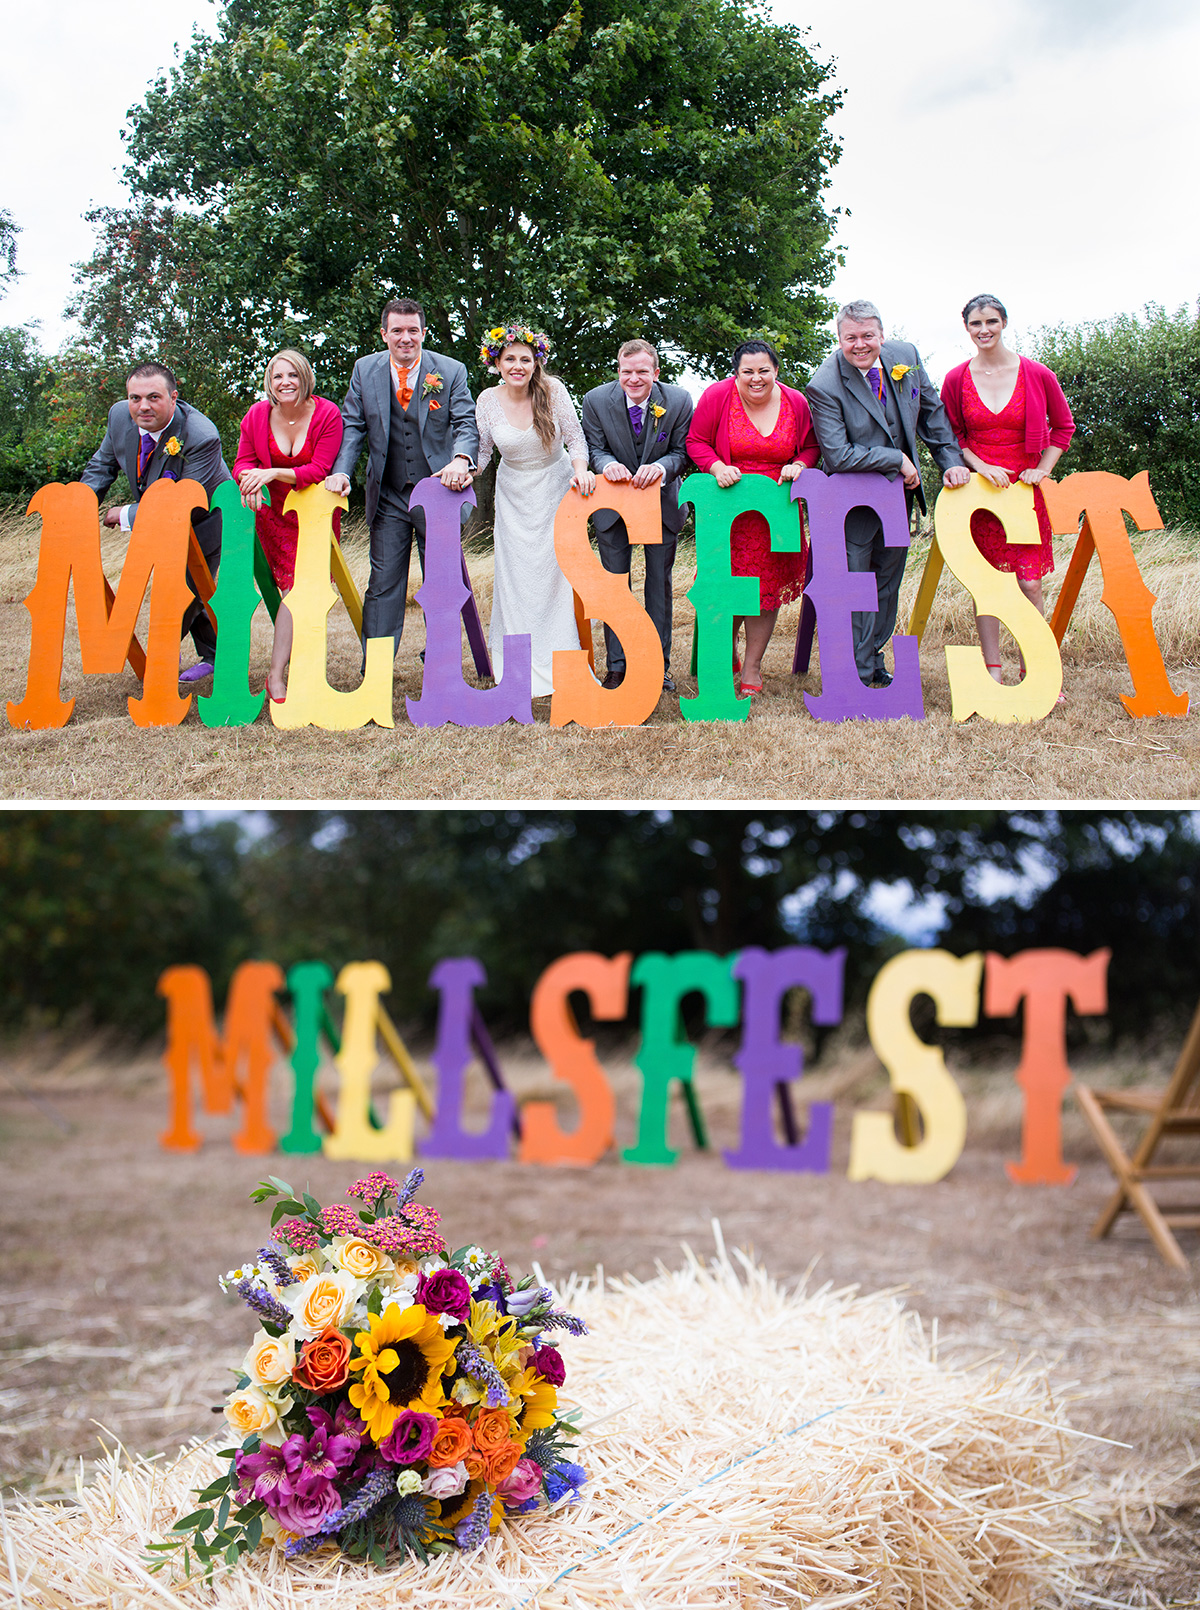 millsfest festival wedding sign letters